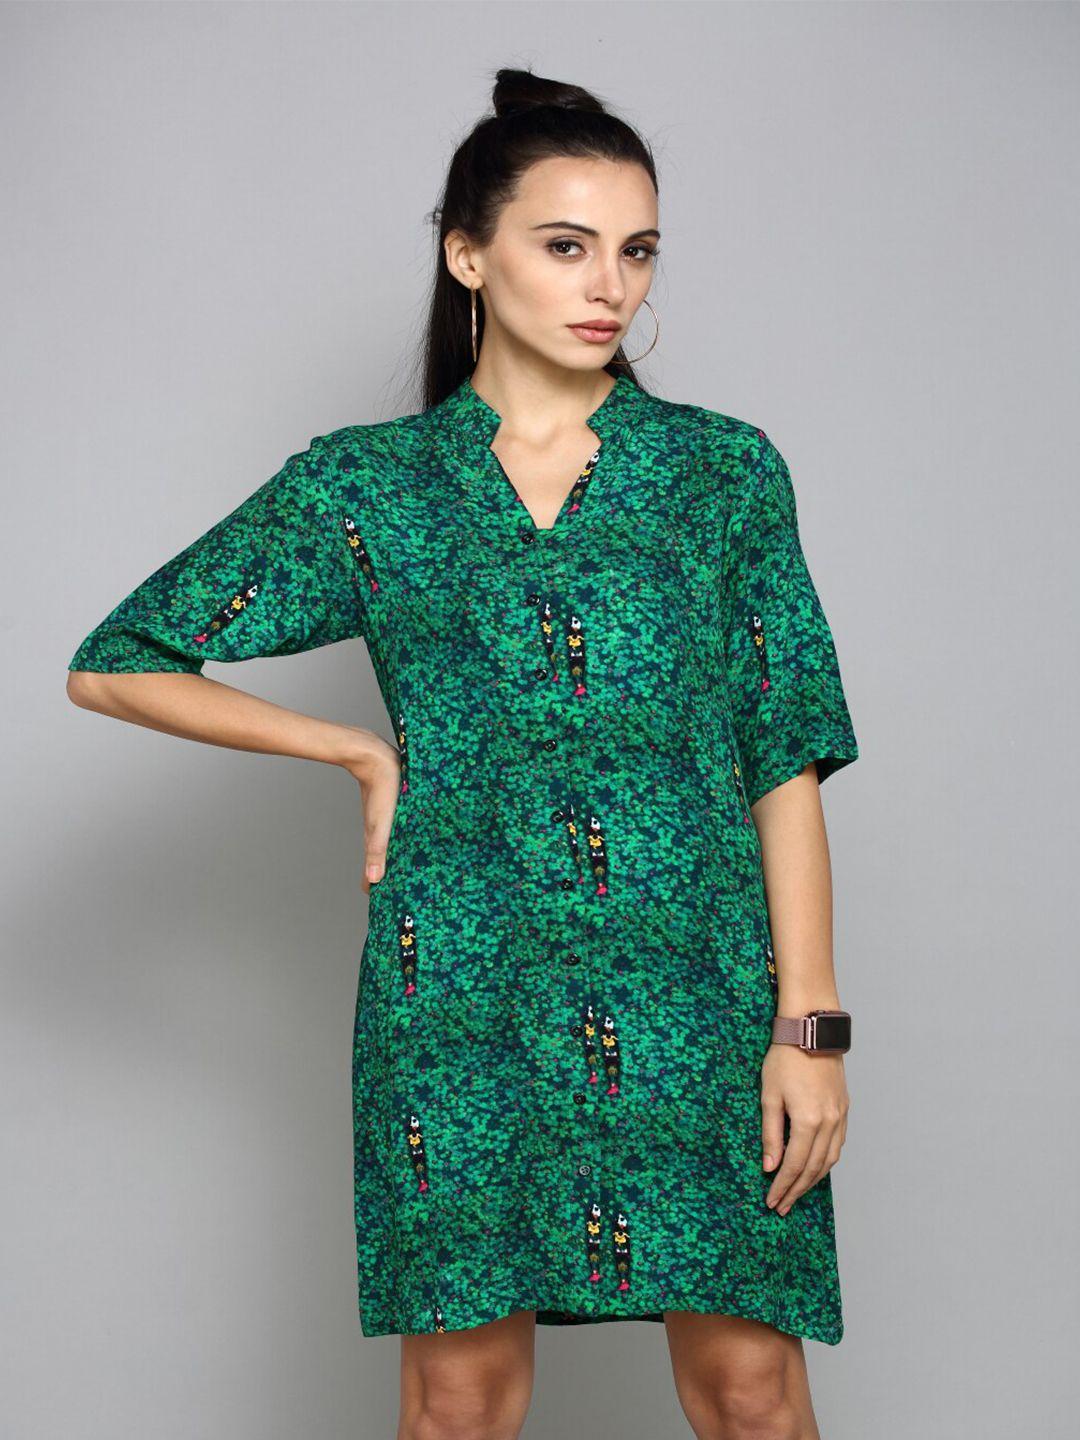 aturabi green floral shirt dress